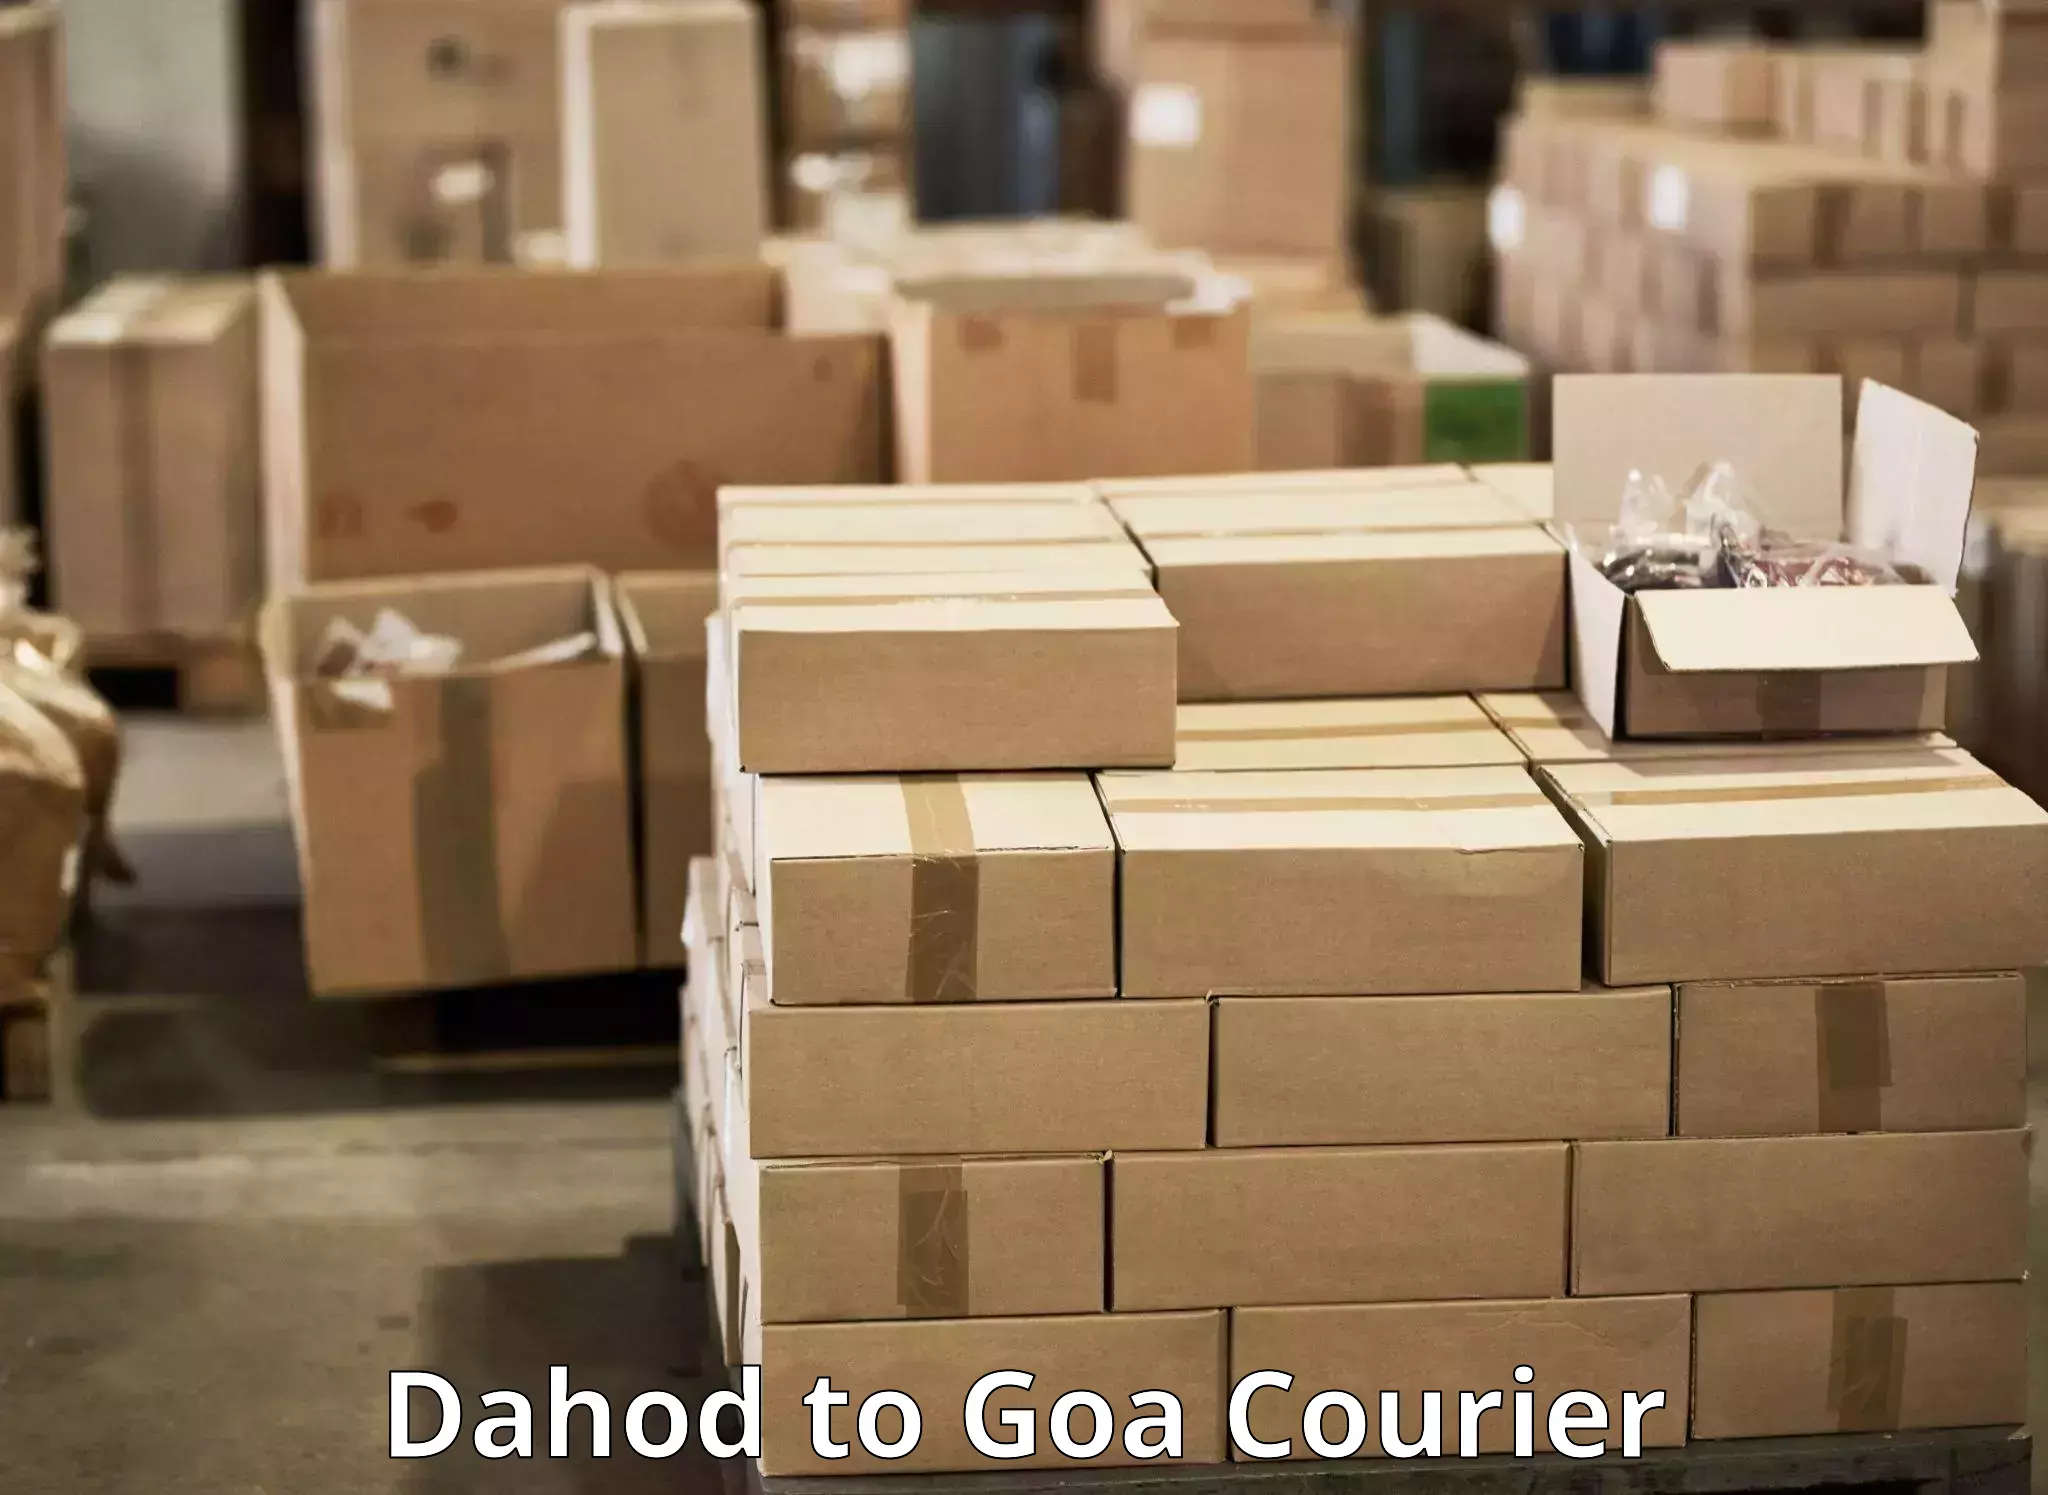 Same-day delivery options Dahod to Panaji